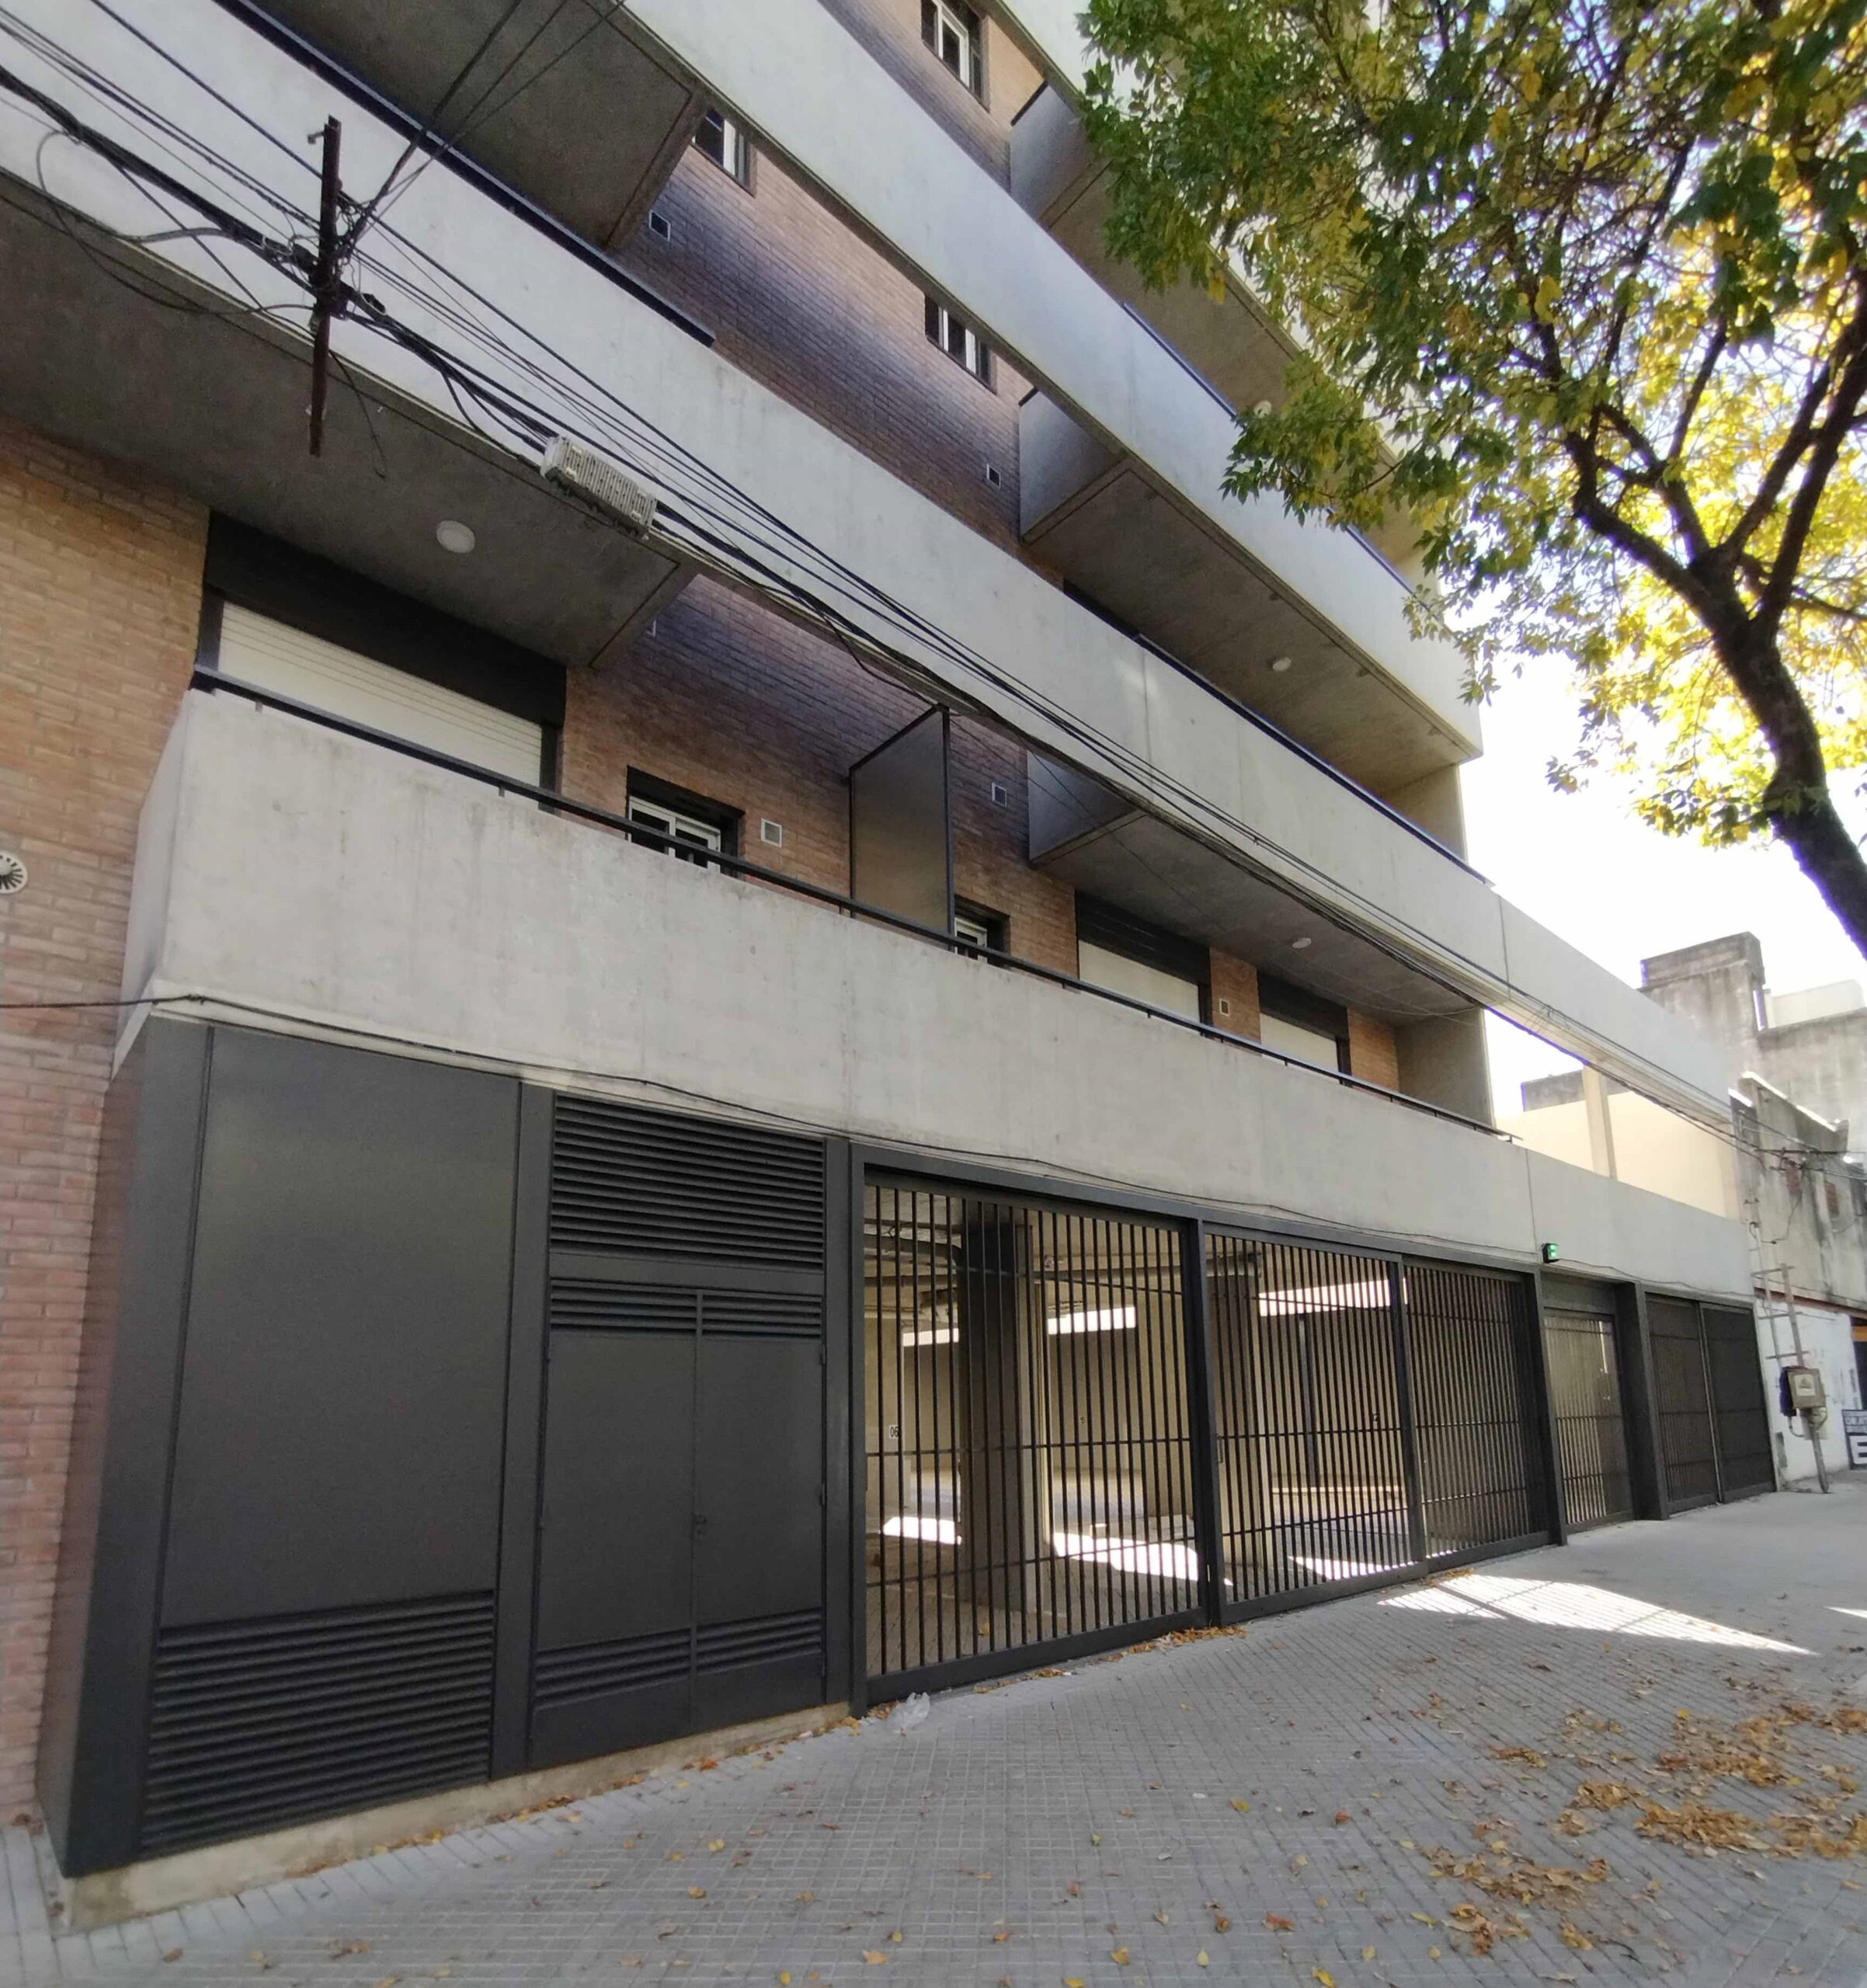 Pilay inauguró dos edificios en Rosario y Santa Fe